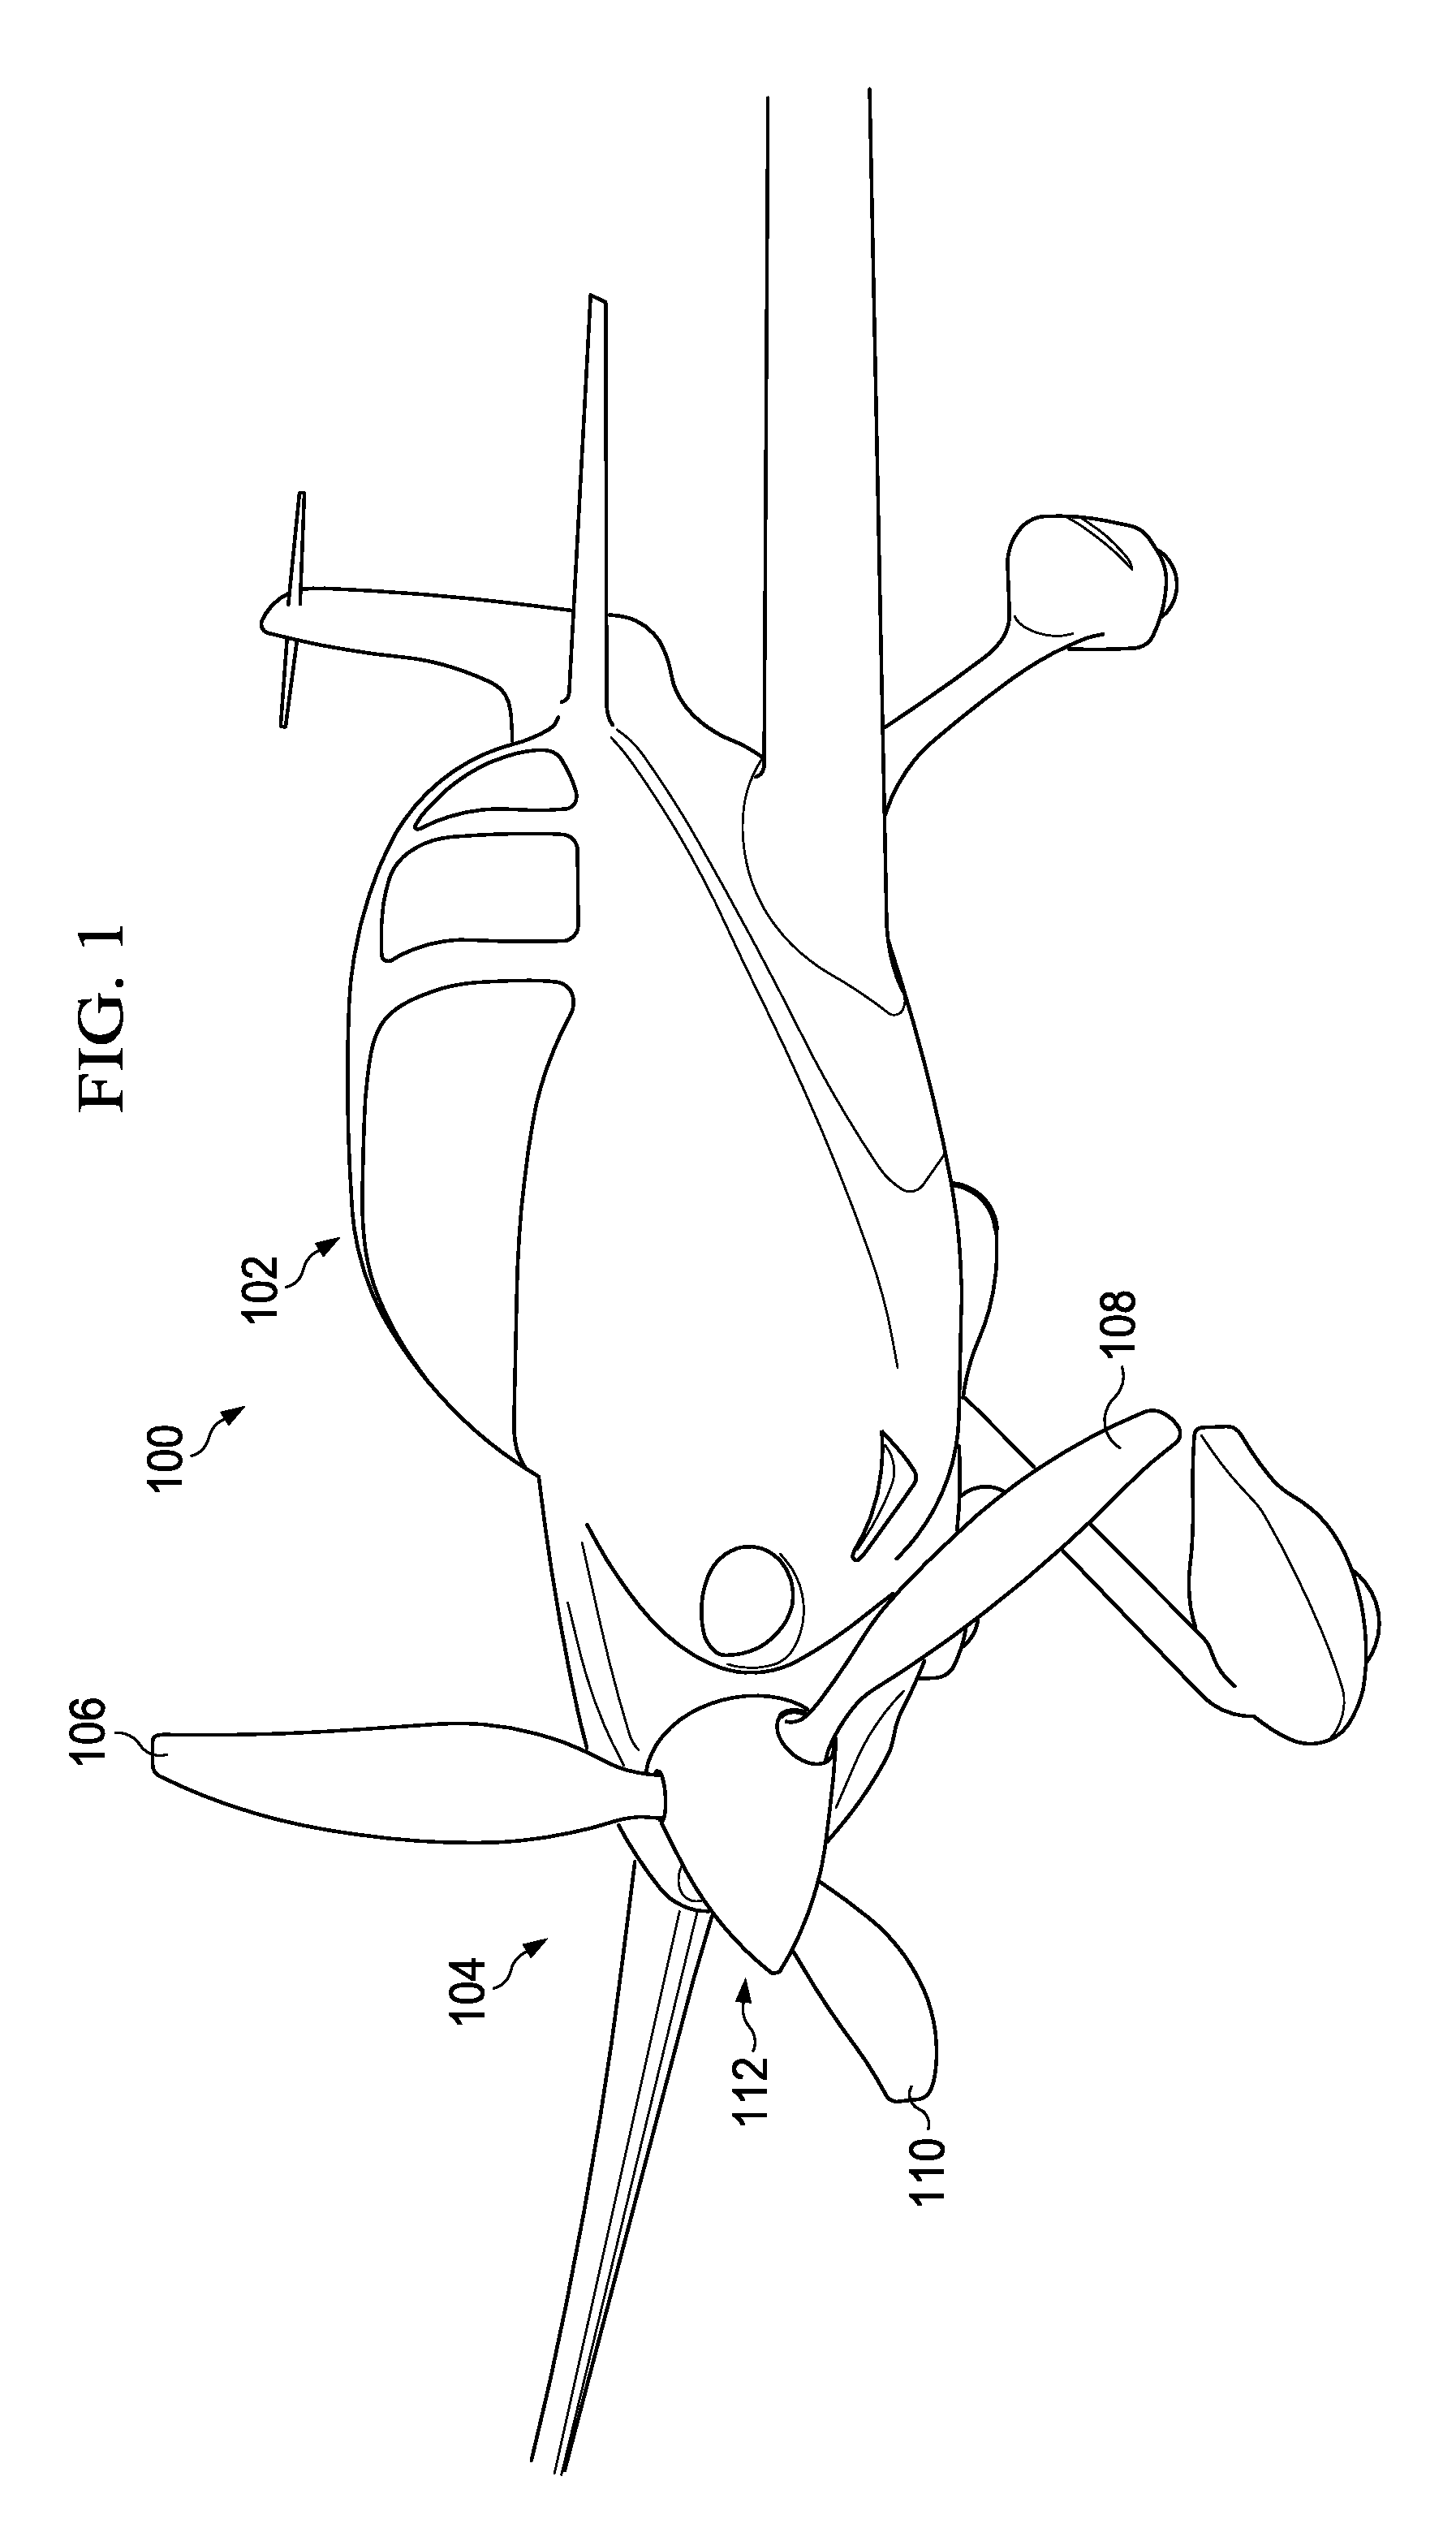 Composite Propeller Spar